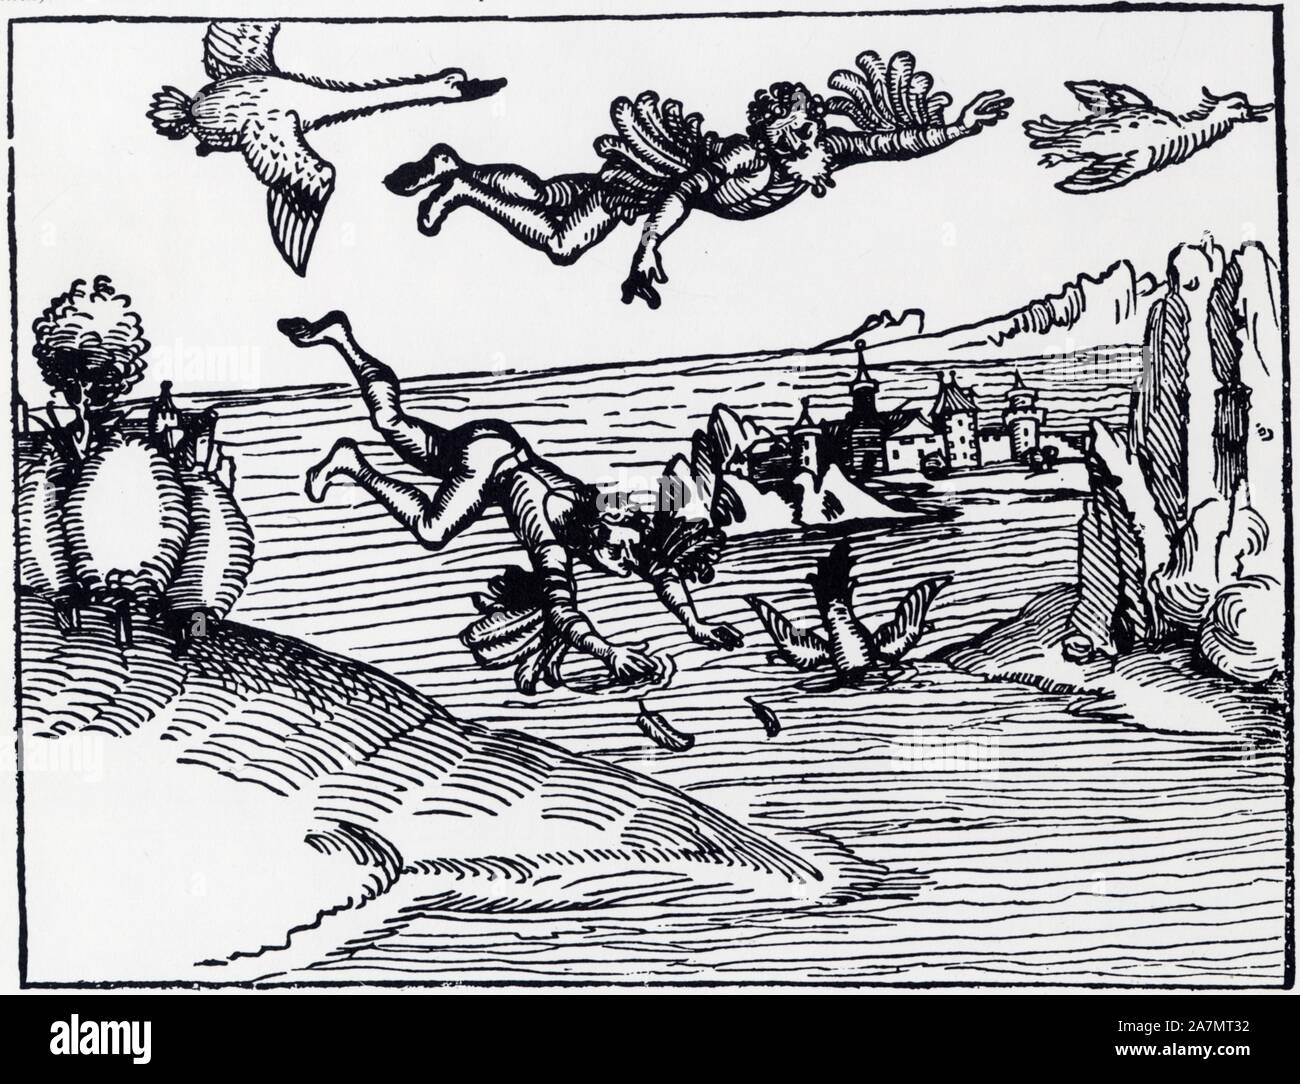 Le vol légendaire de Dédale et d'Icare réalisant le plus vieux rêve de l'homme,selon la mythologie grecque.d'après une Gravure sur bois du XV ème sièc Stockfoto